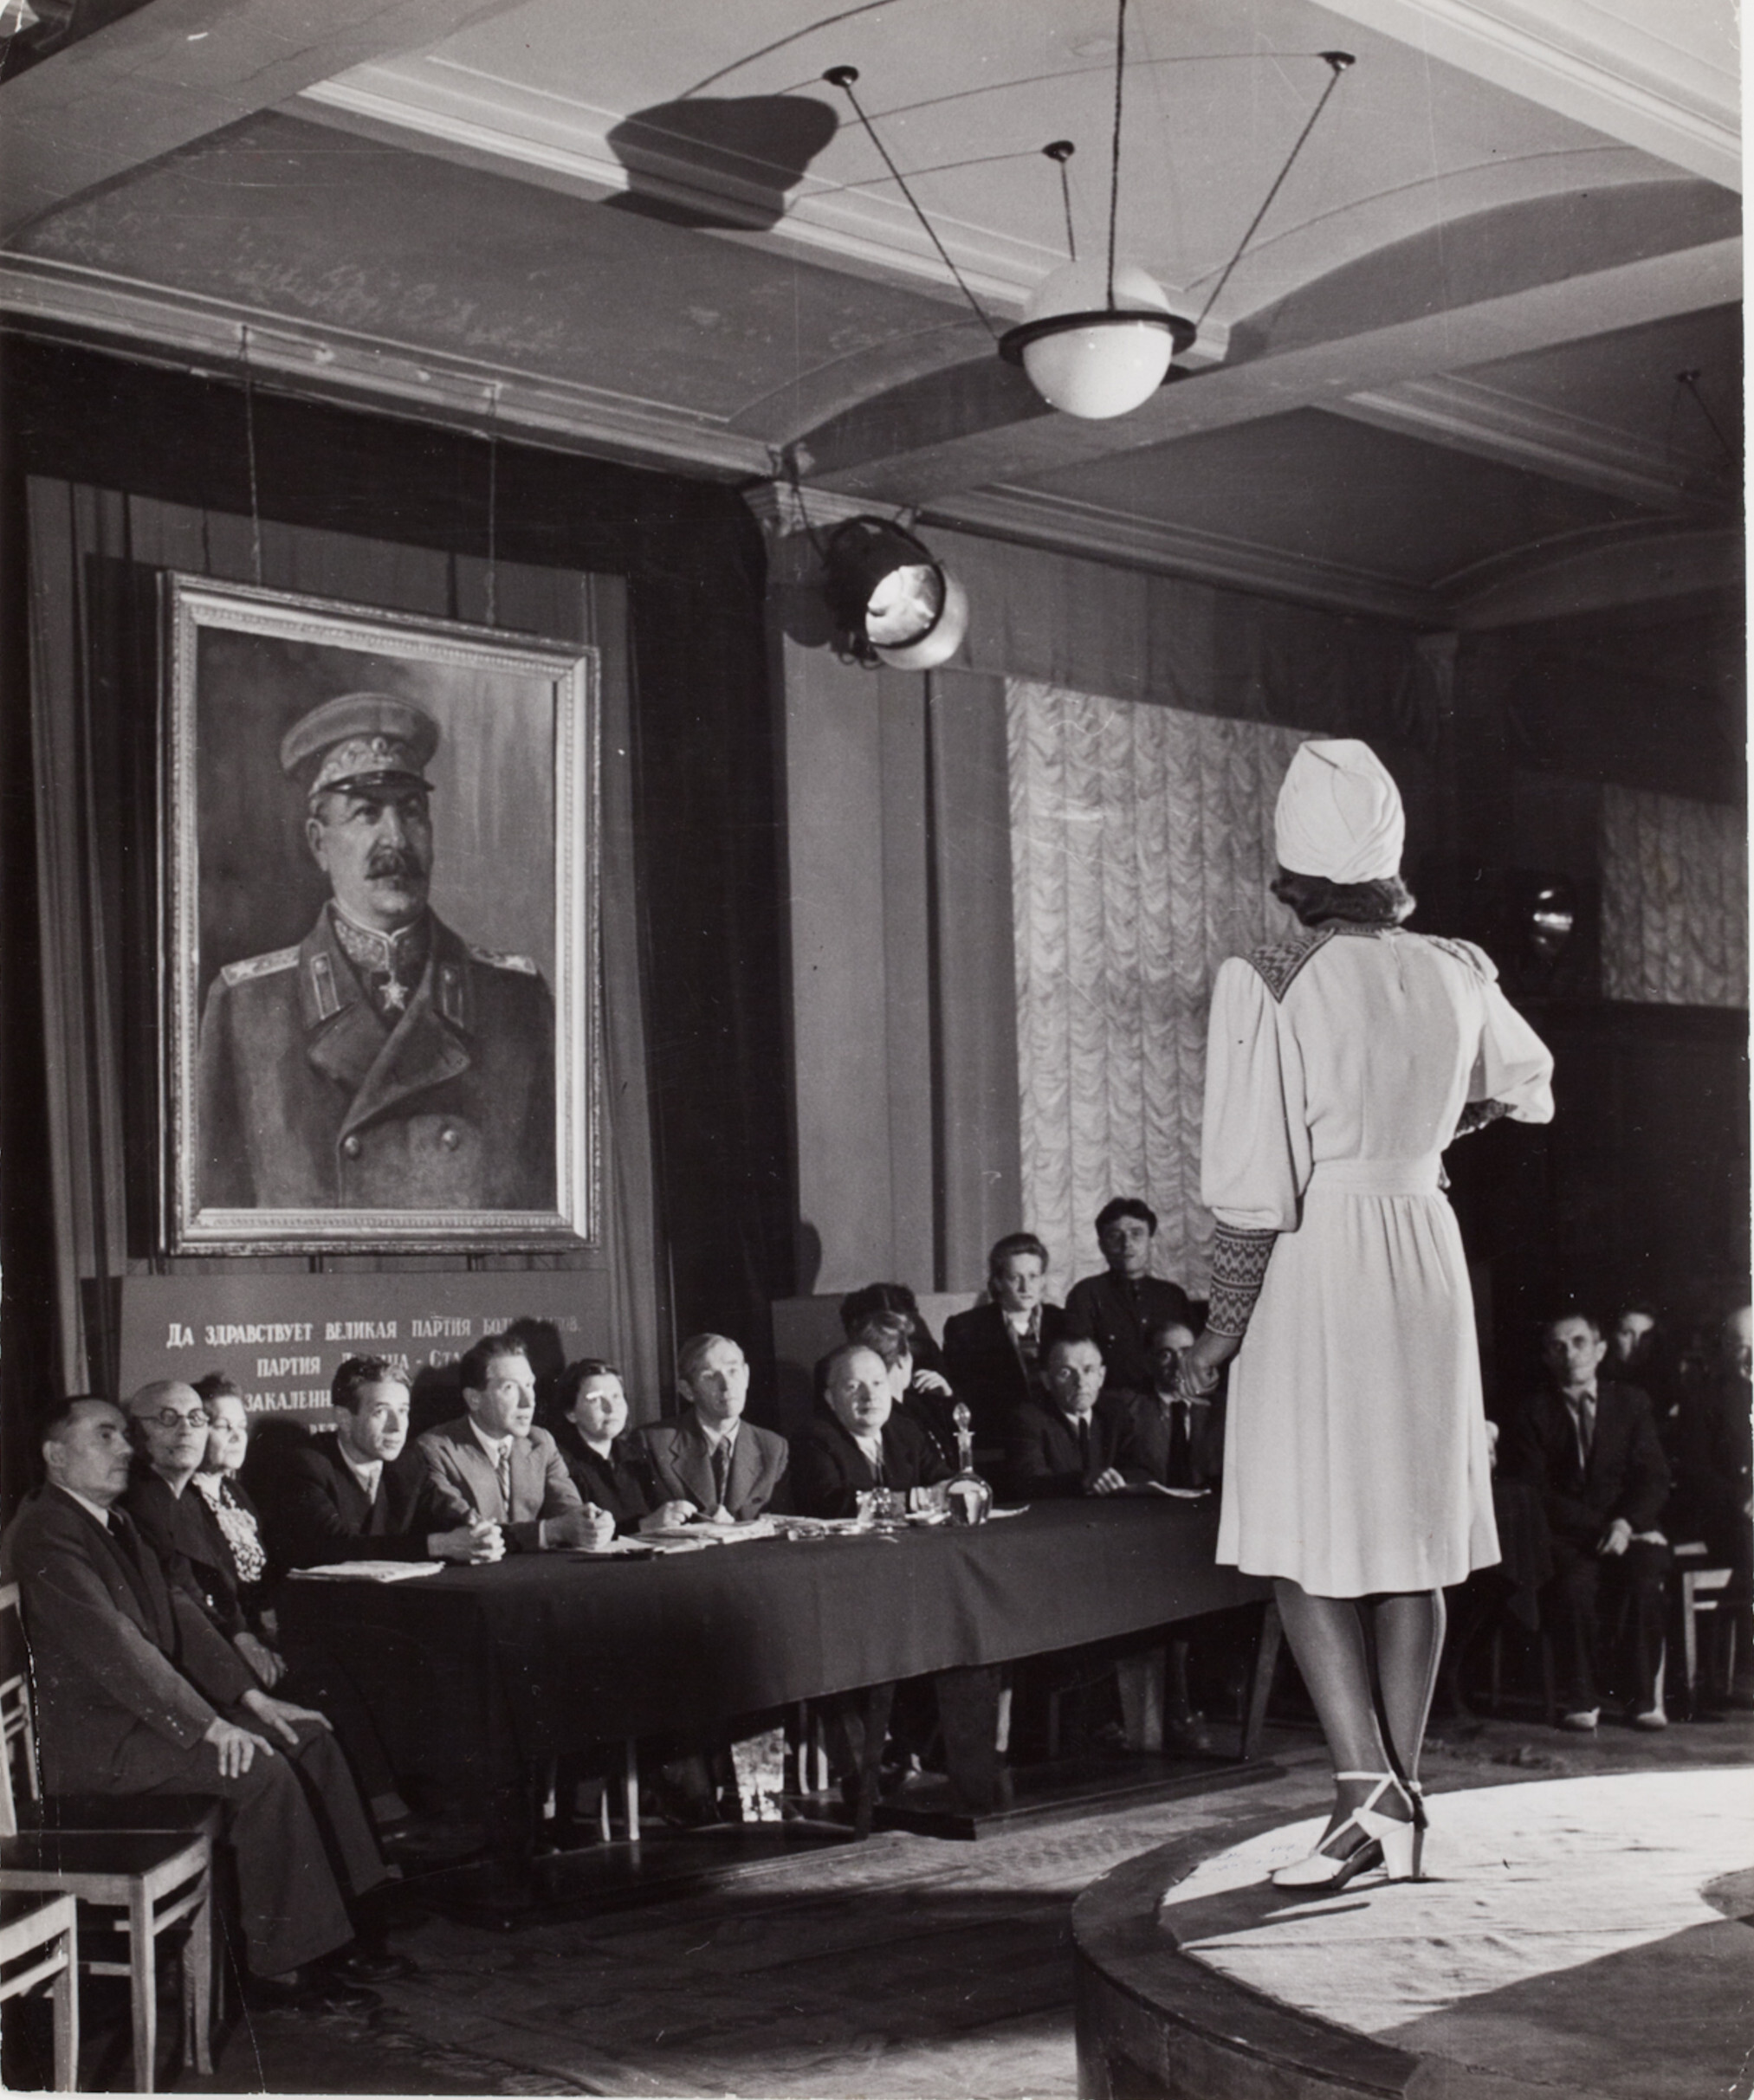 Комитет по утверждению модной одежды, пригодной для продажи советским женщинам, Москва, 1947 год. Фотограф Роберт Капа